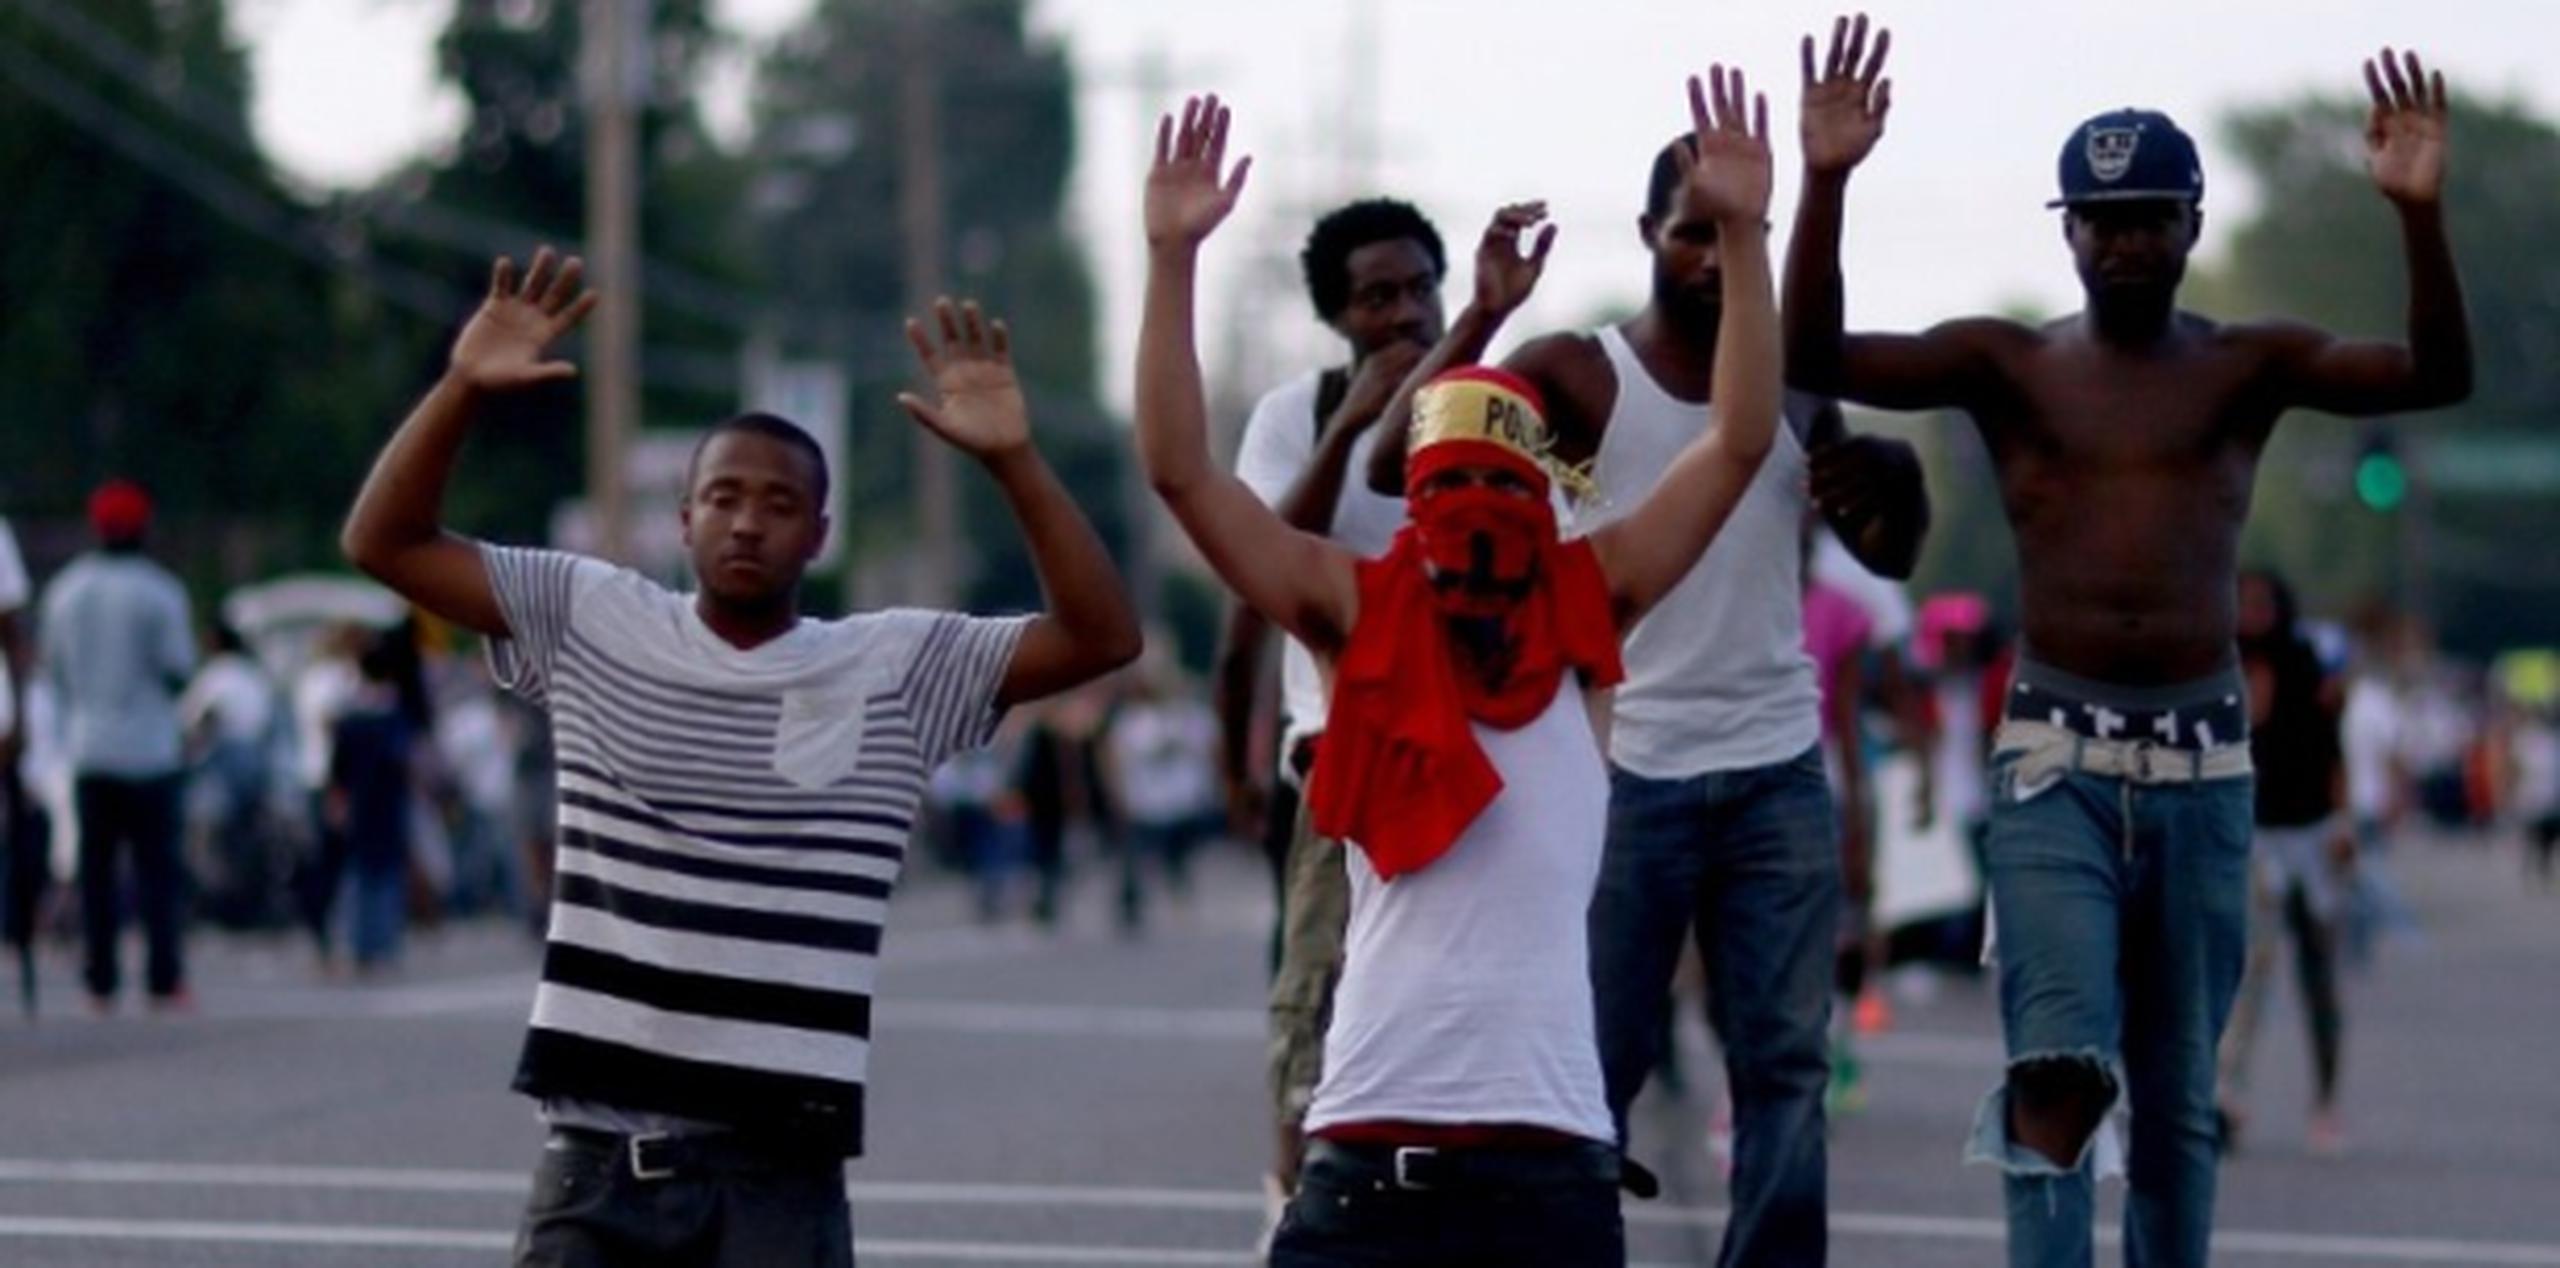 Los disturbios comenzaron hace una semana en esta localidad de 21.000 habitantes de mayoría afroamericana.      (Joe Raedle/Getty Images/AFP)